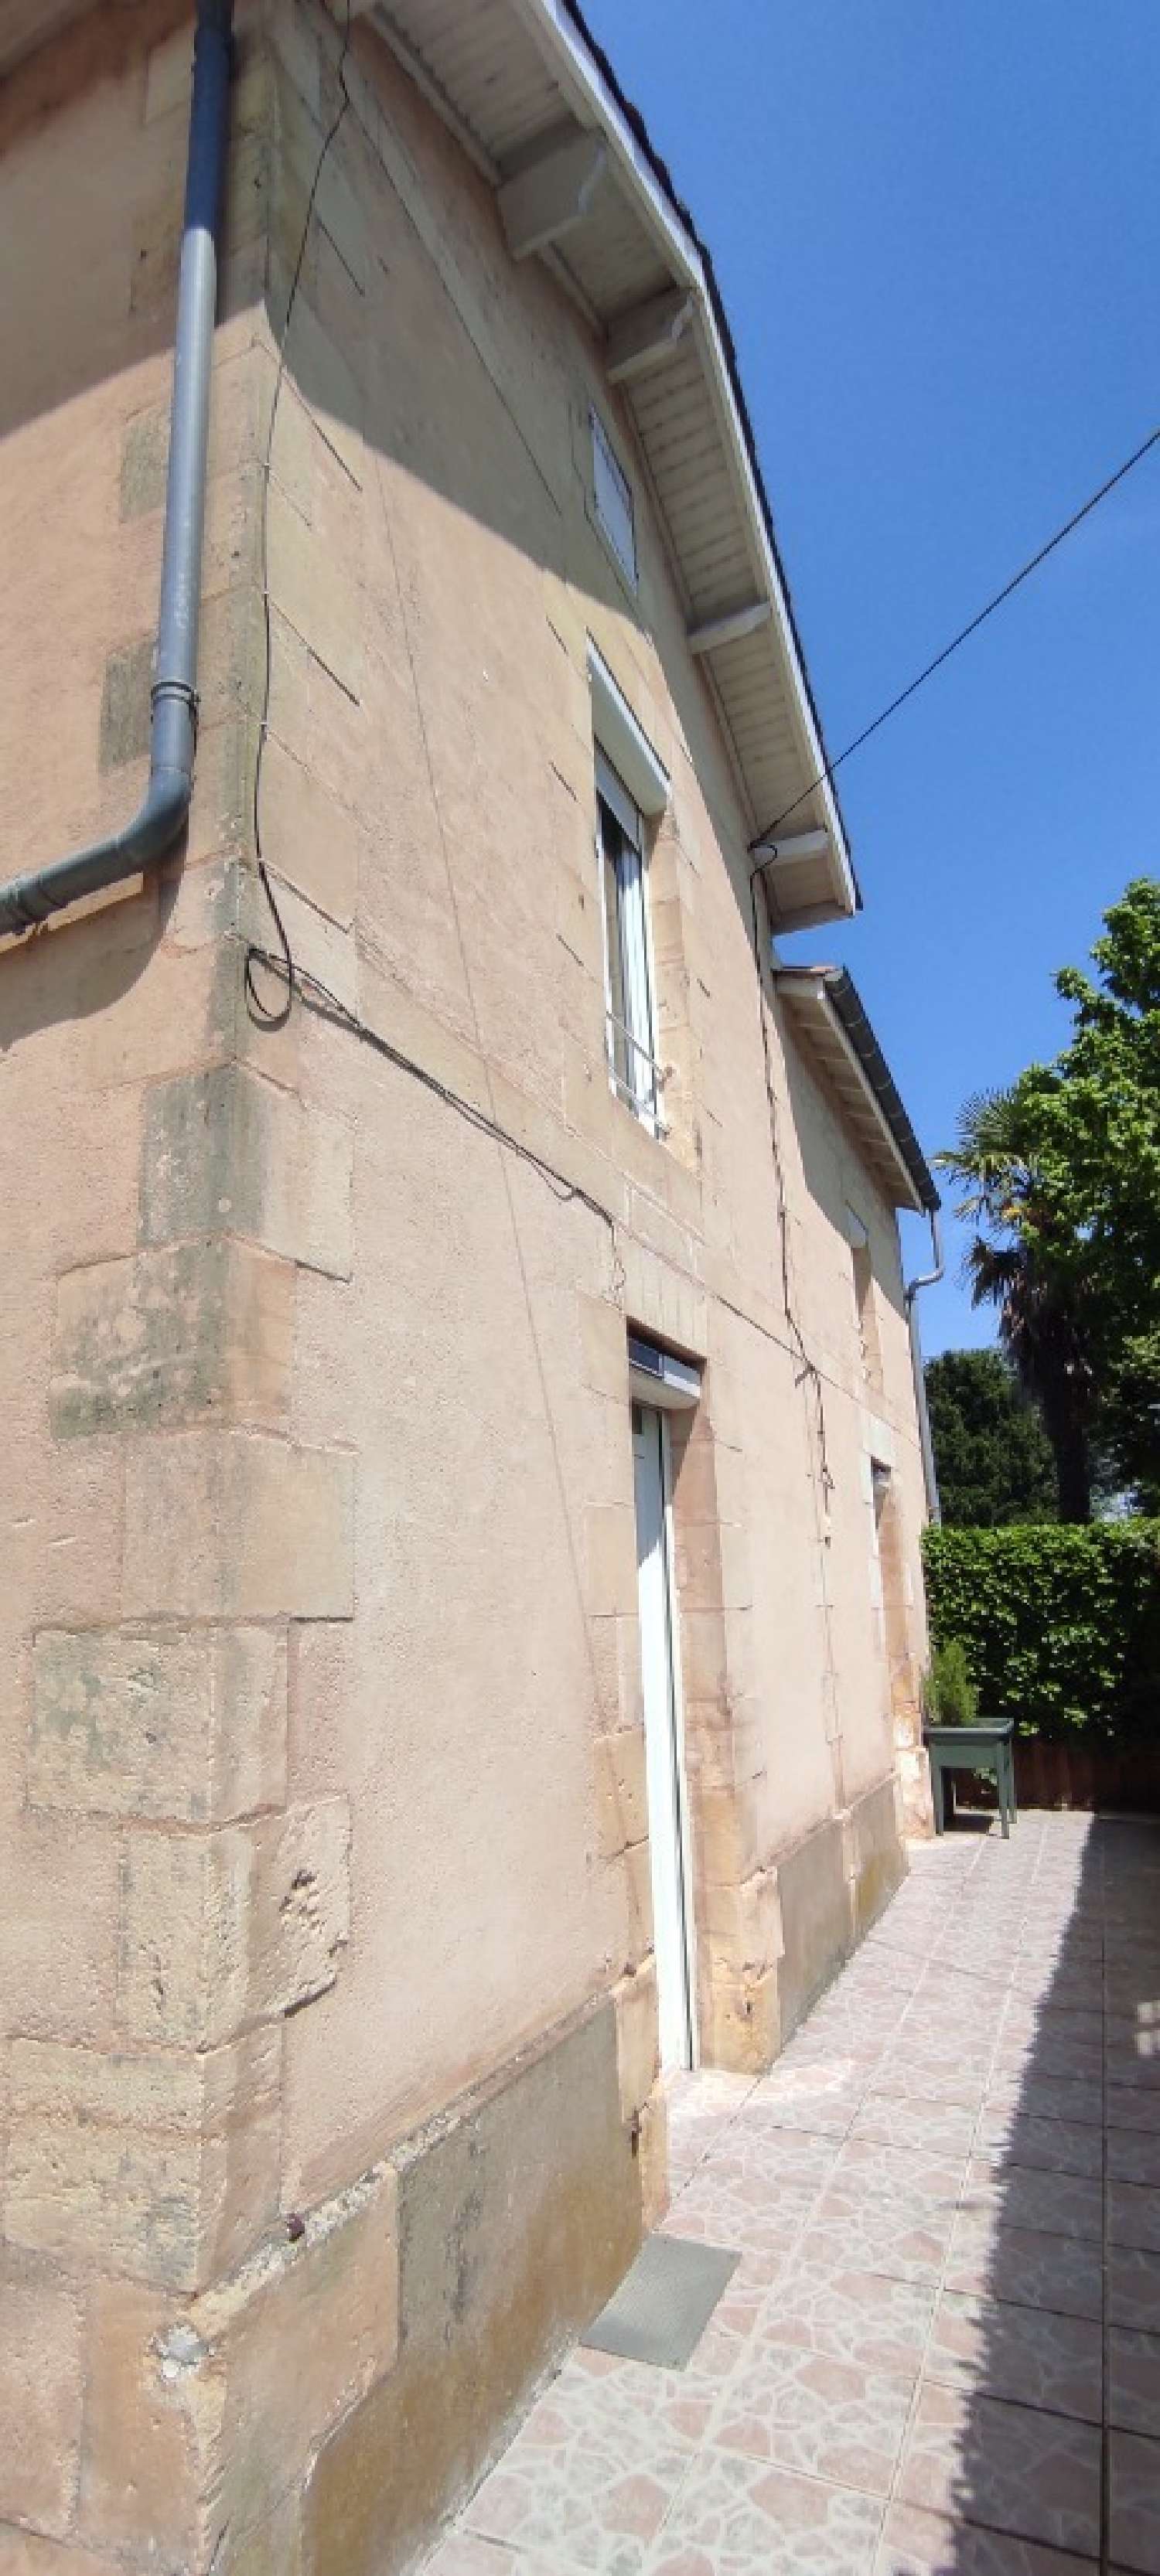  à vendre maison Lalinde Dordogne 5